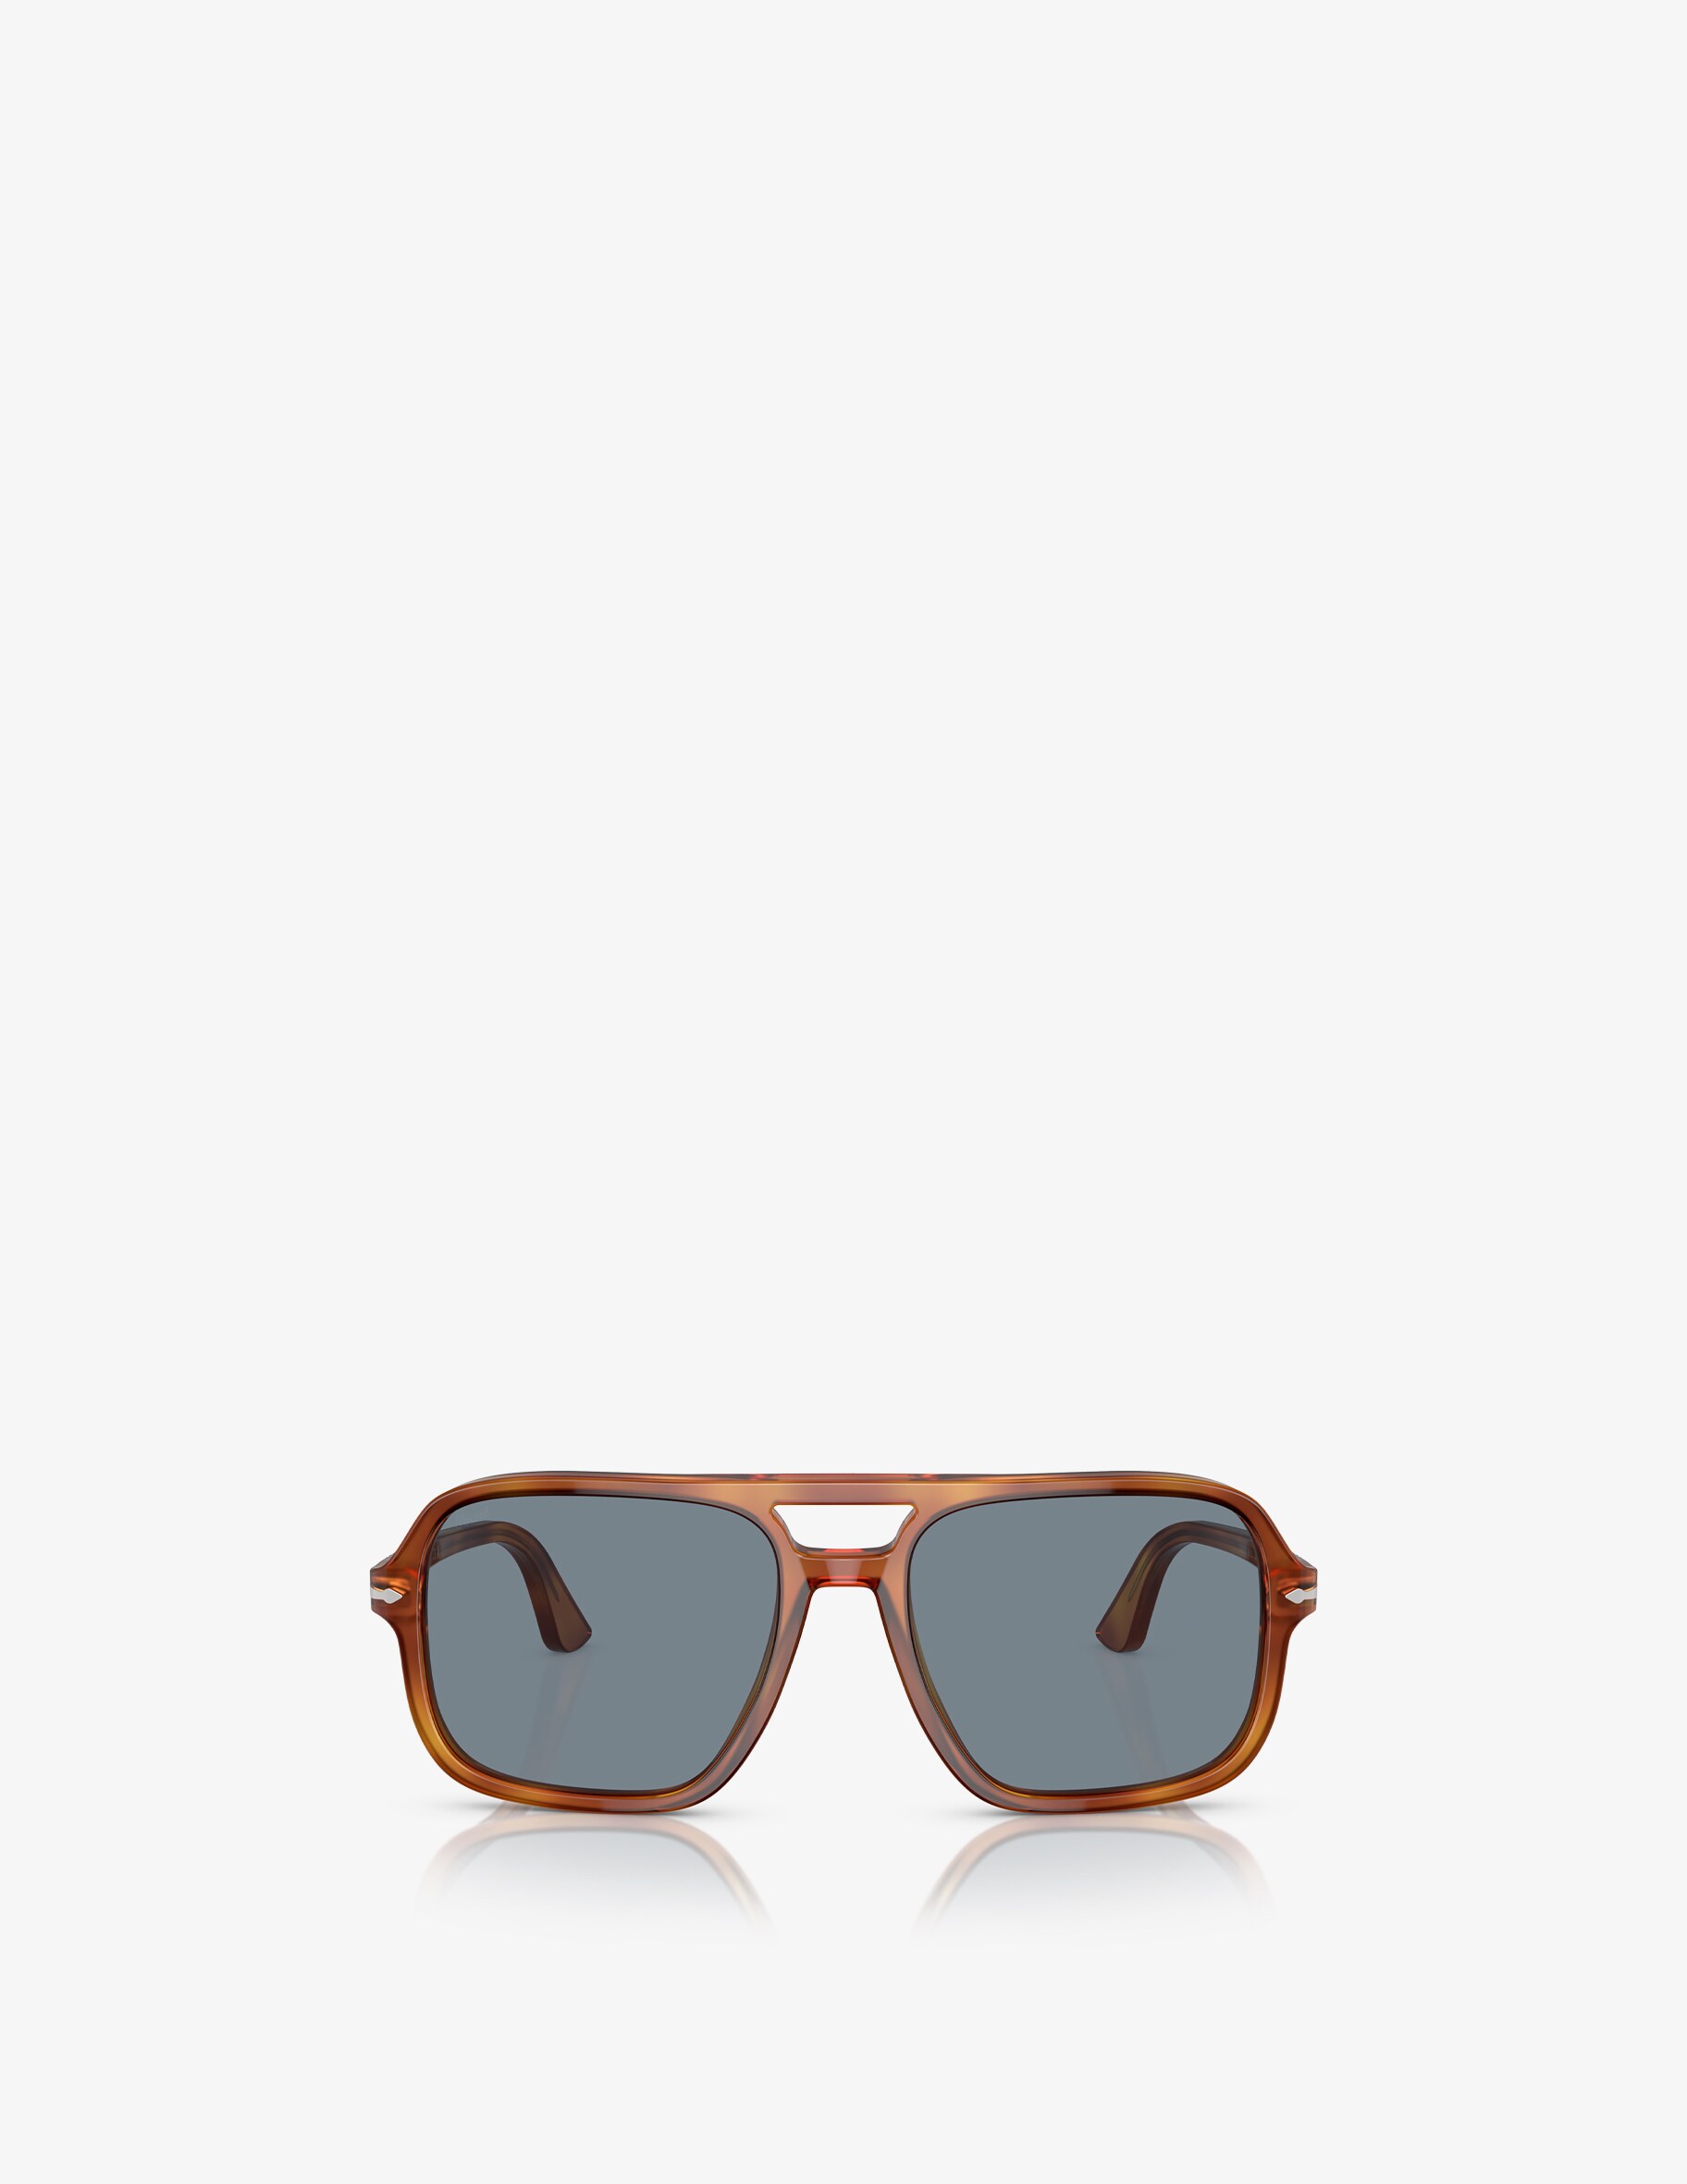 Солнцезащитные очки-авиаторы Persol, цвет Marrone